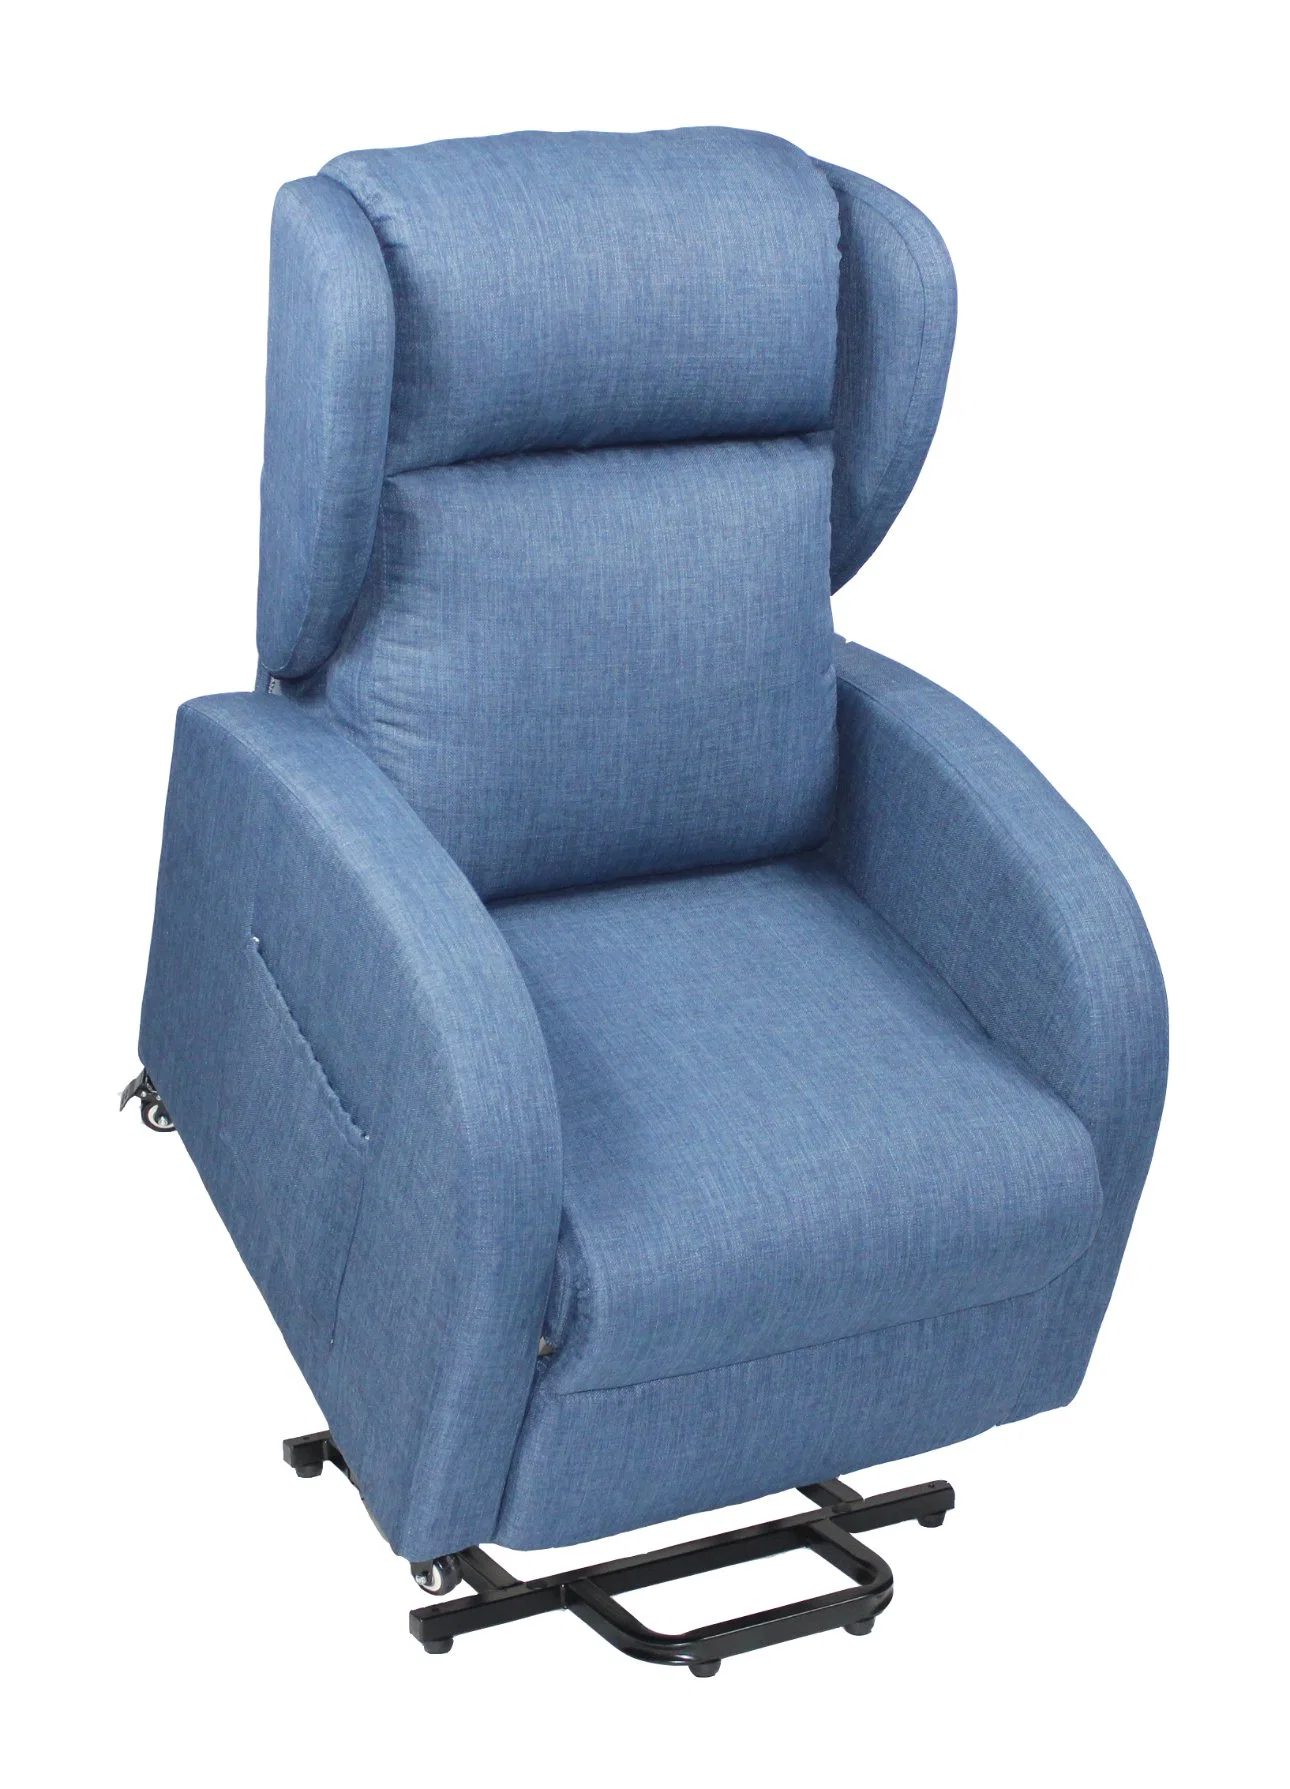 Haushaltskontrolleur elektrischer Stuhl Massagesessel für drahtlose Verwendung.